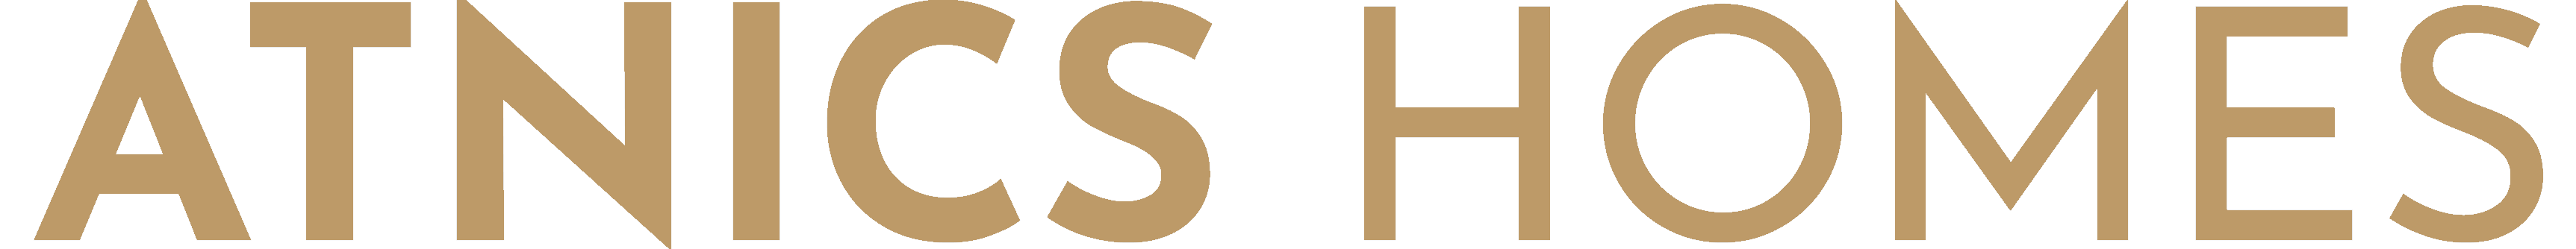 atnicshomes-gold-logo